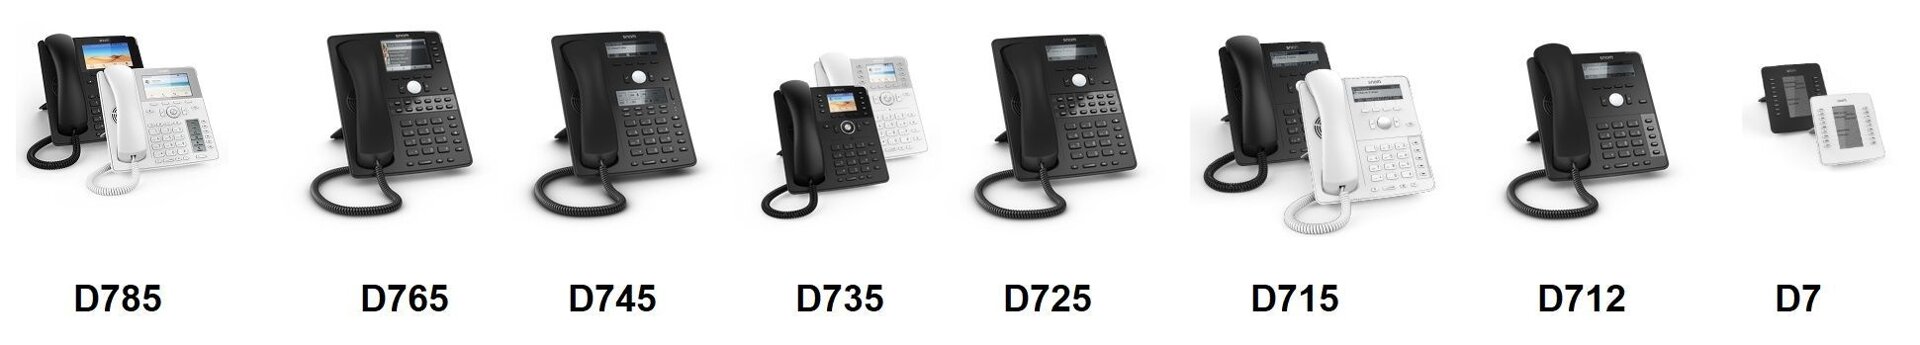 IP-телефоны Snom 7-й серии (D7XX)